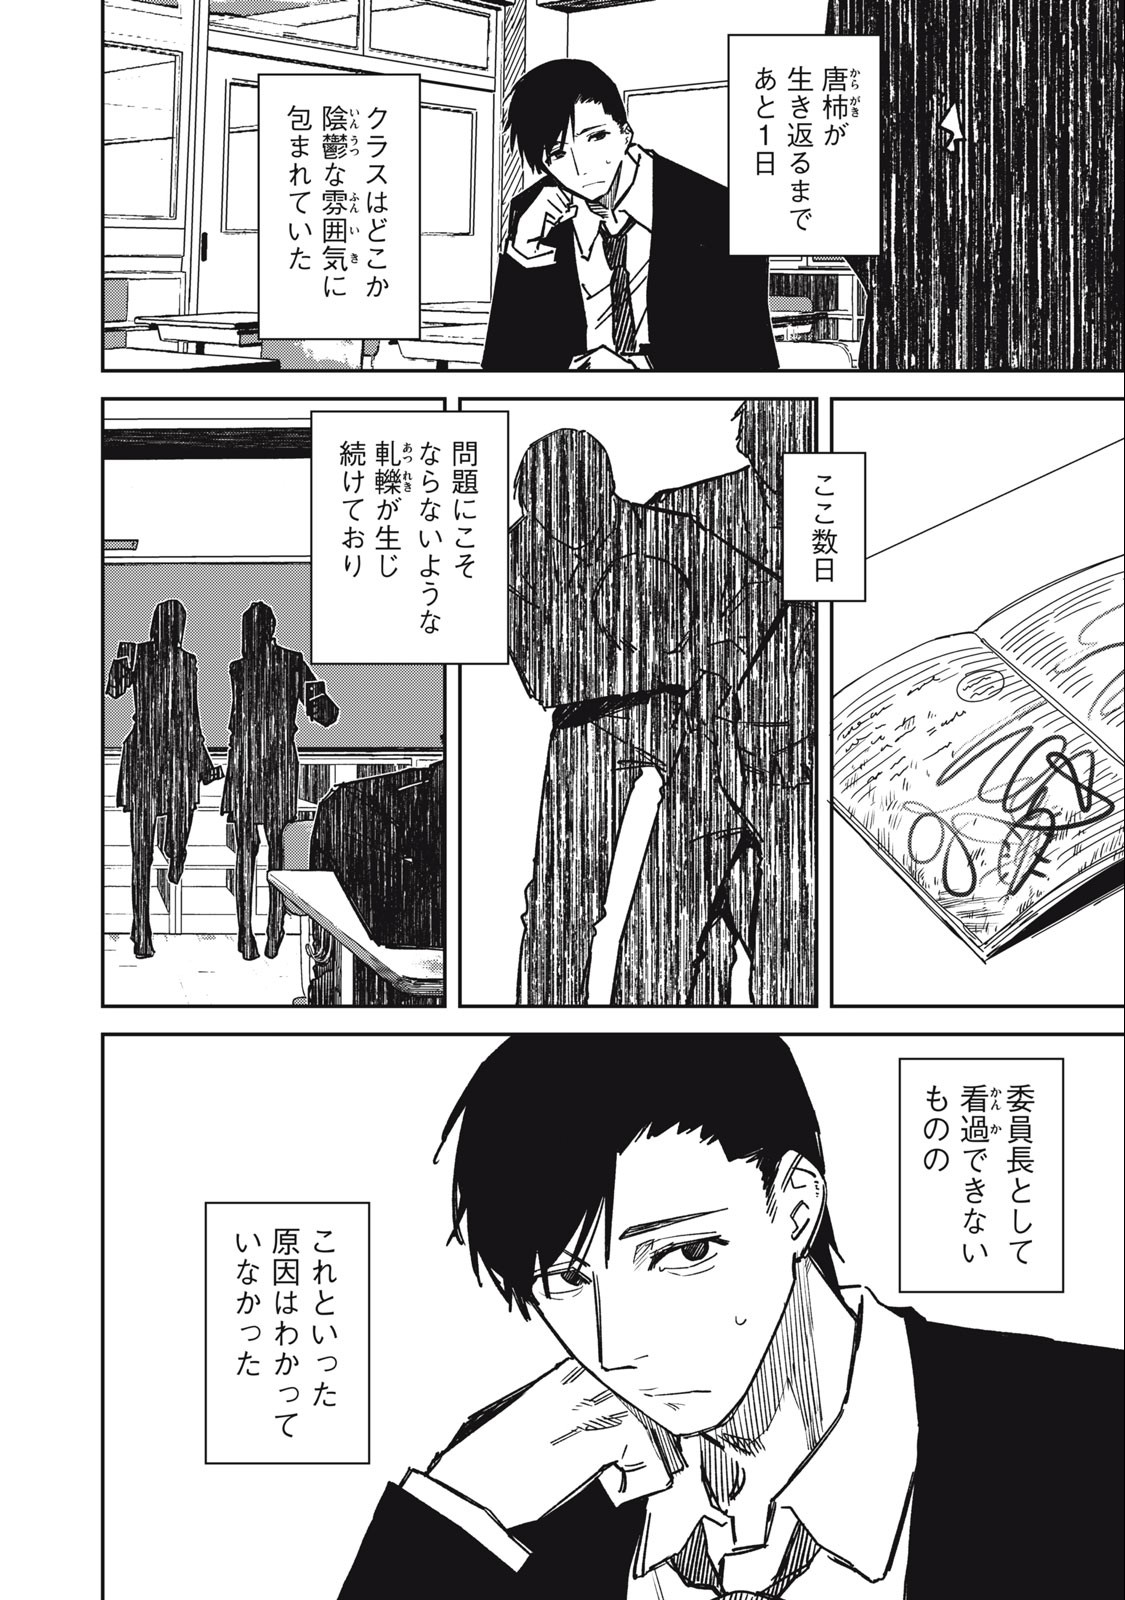 Uchuujin no Kakushigoto - Chapter 14 - Page 2